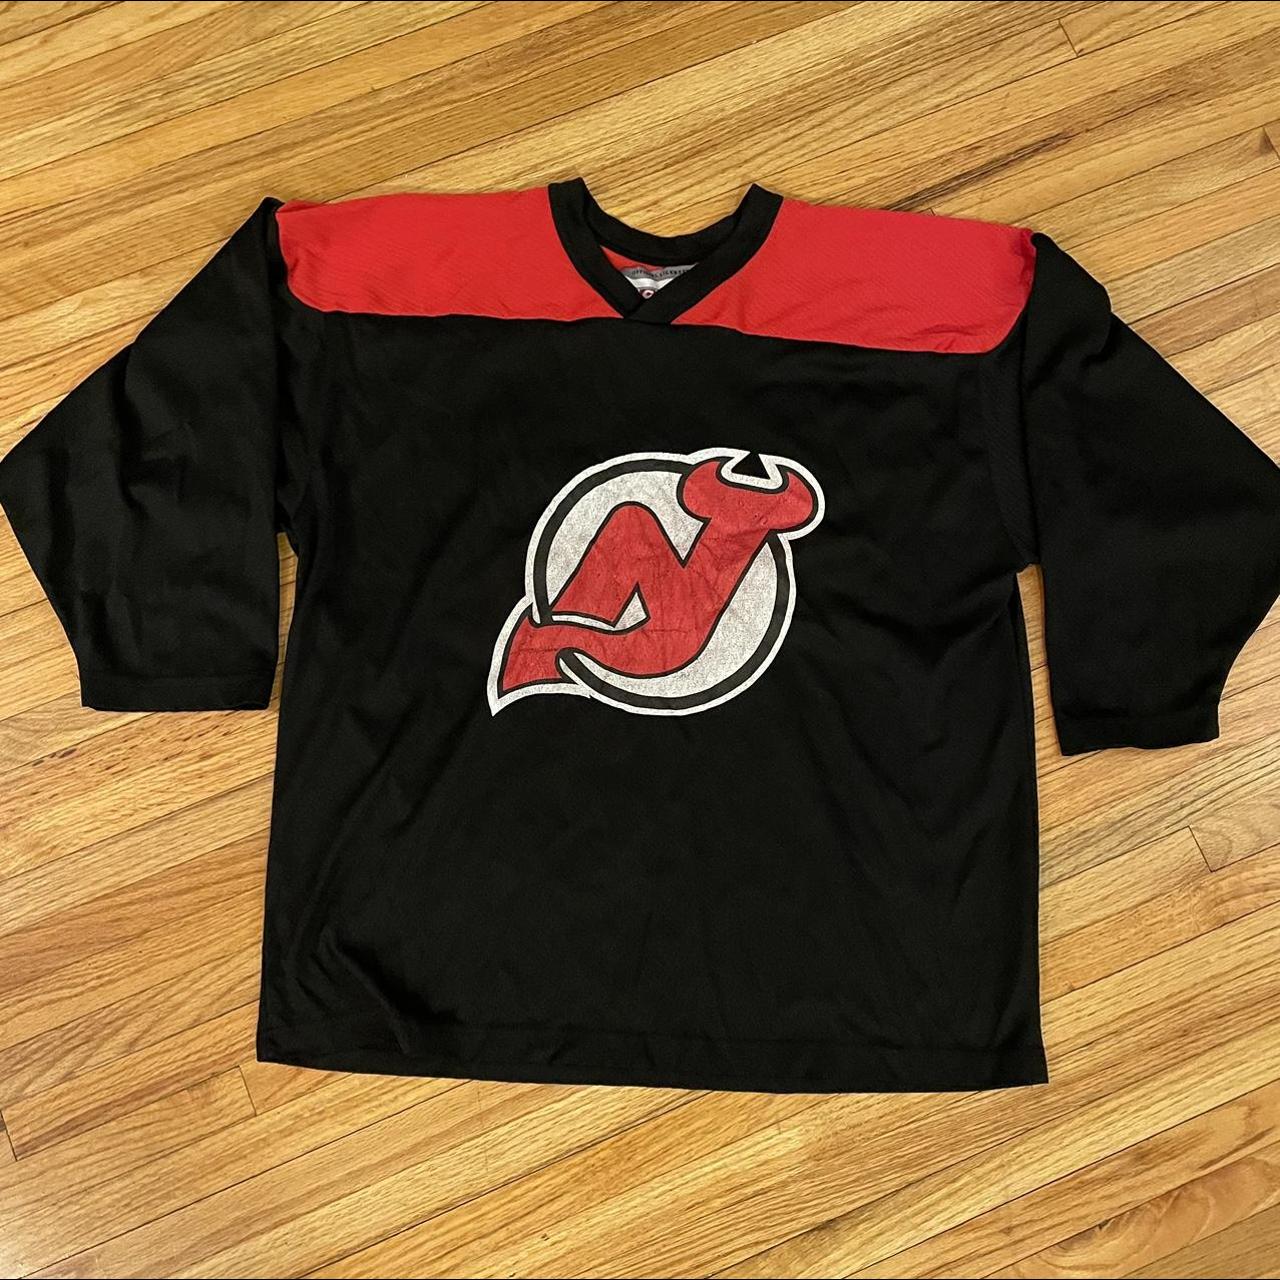 Vintage 1990s New Jersey Devils CCM Hockey Jersey